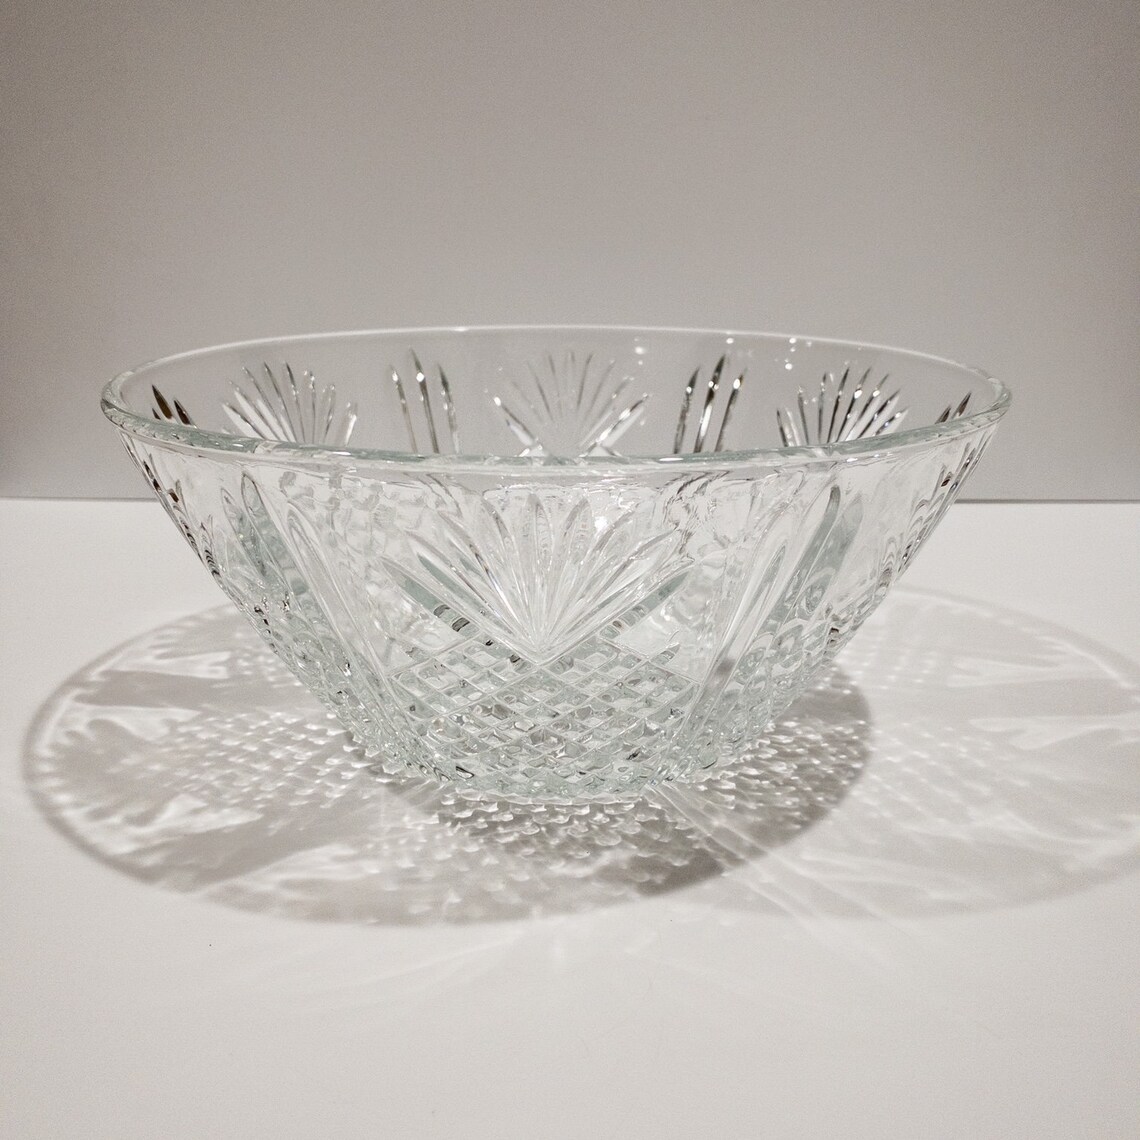 Vintage Crystal Decorative Fruit Serving Bowl | Etsy